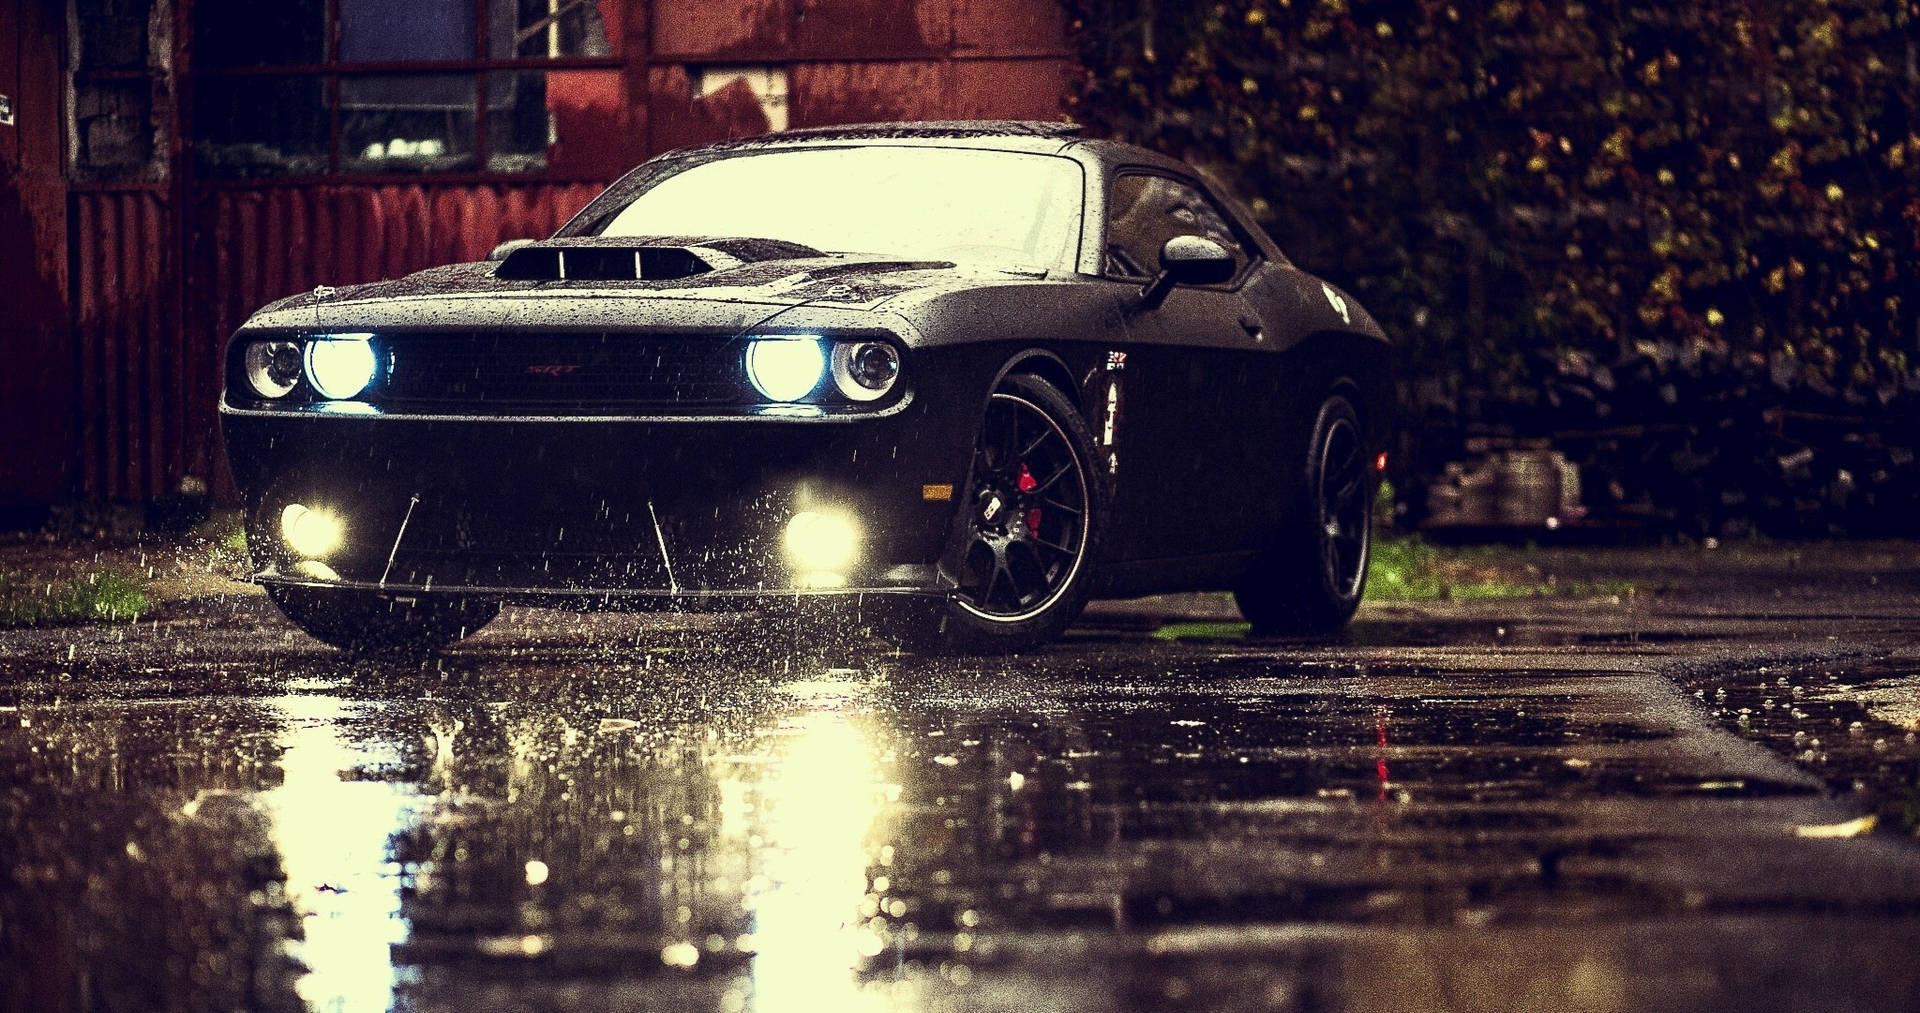 Black Dodge Challenger Demon 4K On A Wet Road Wallpaper